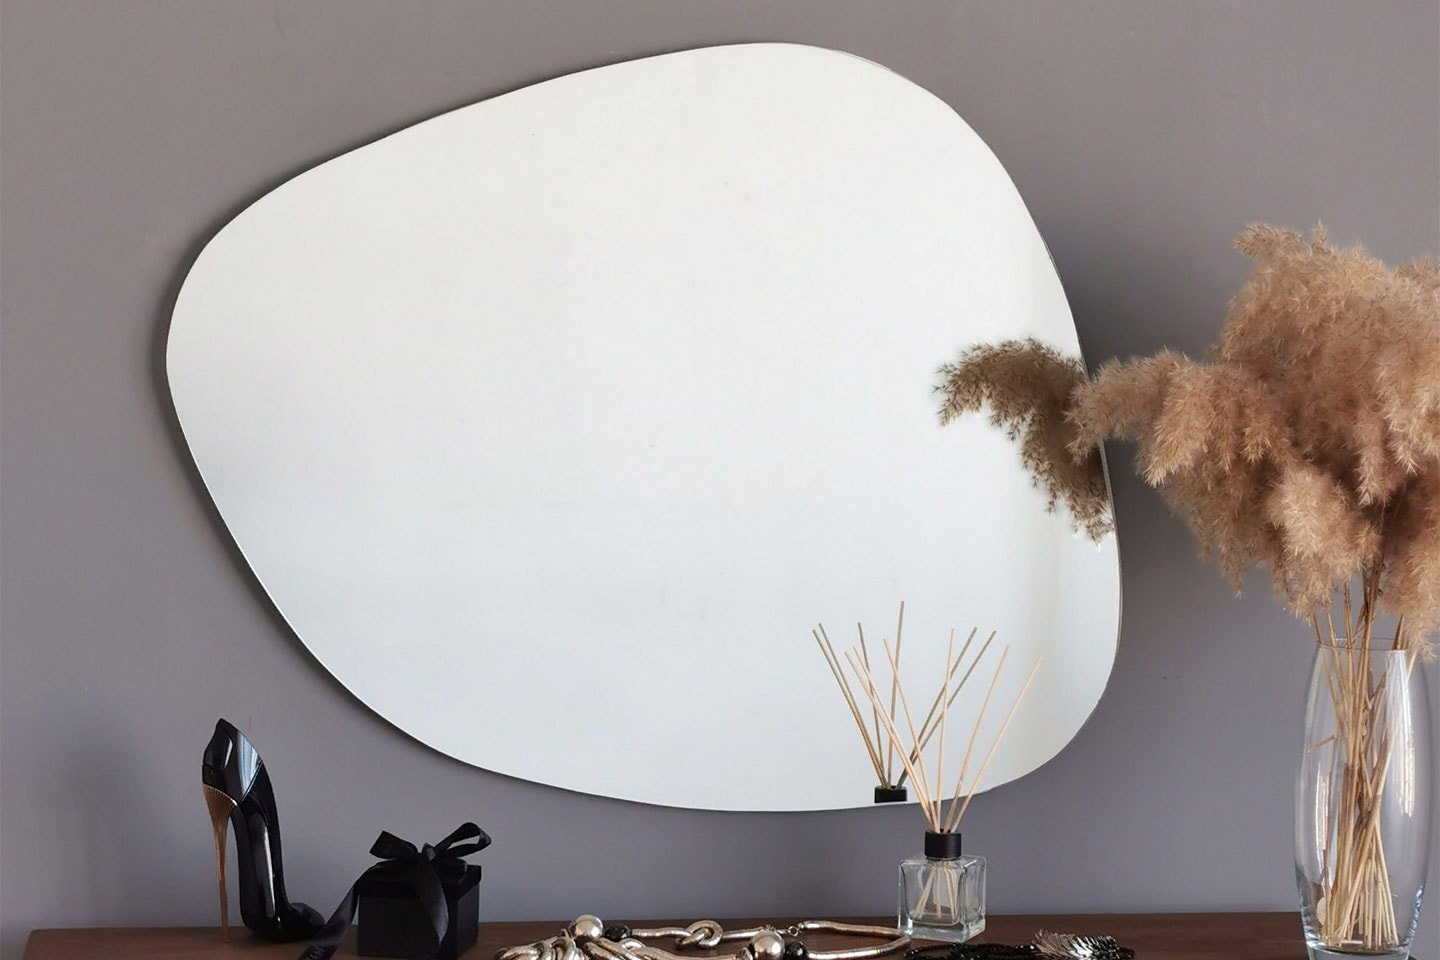 Soho Ayna spegel asymmetrisk form 75 x 58 cm (2 av 5) (3 av 5)